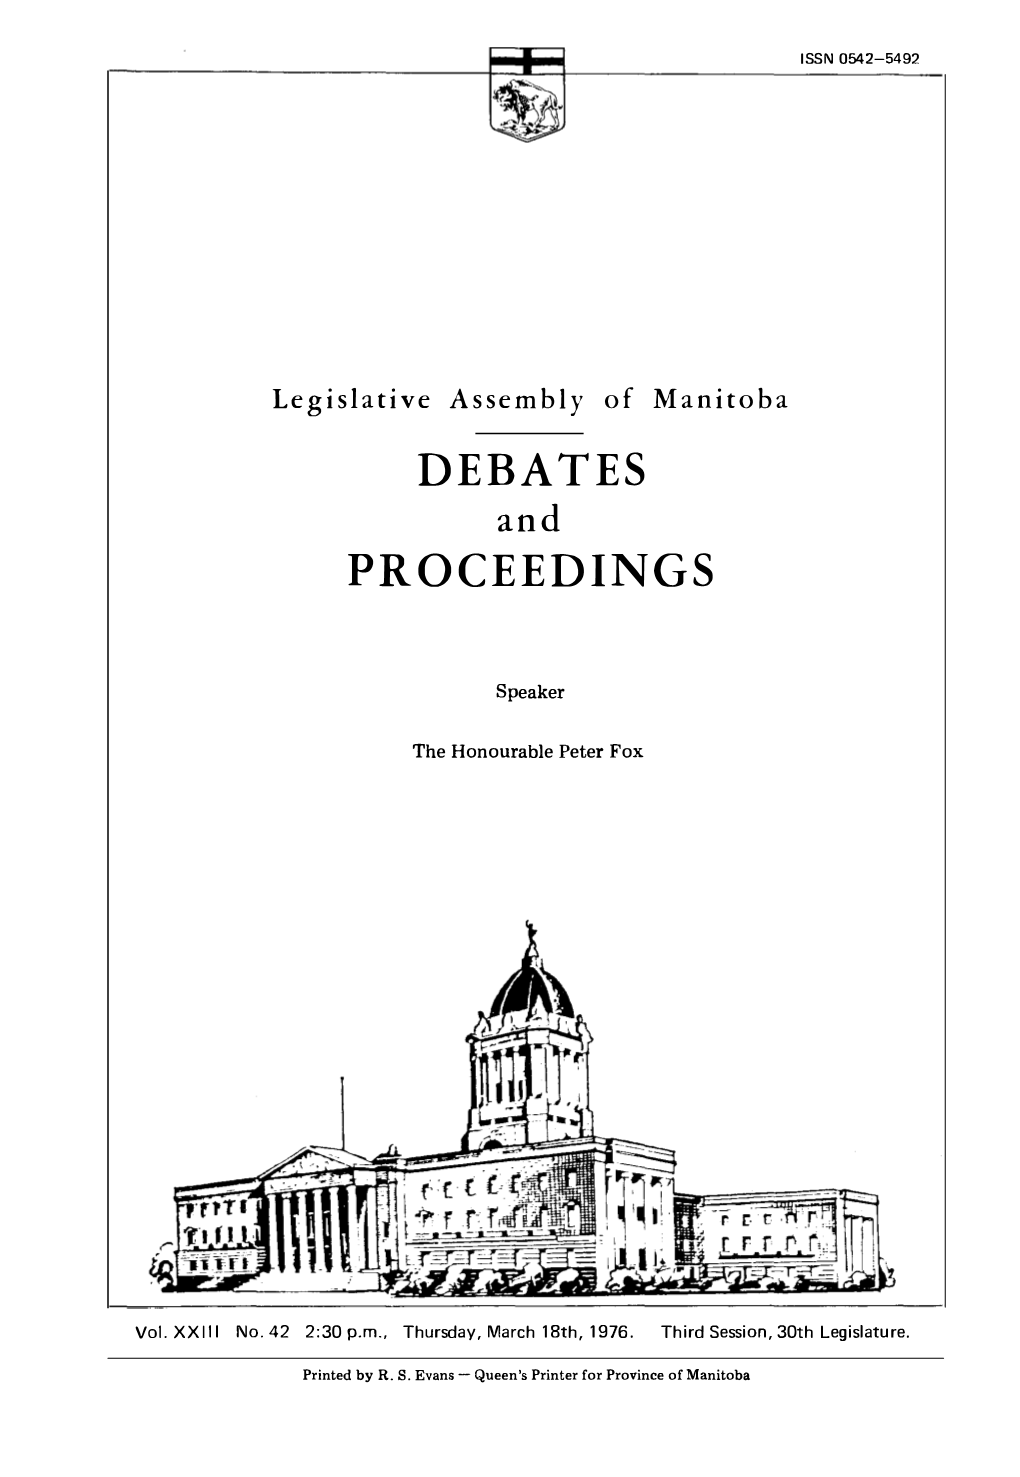 Debates Proceedings